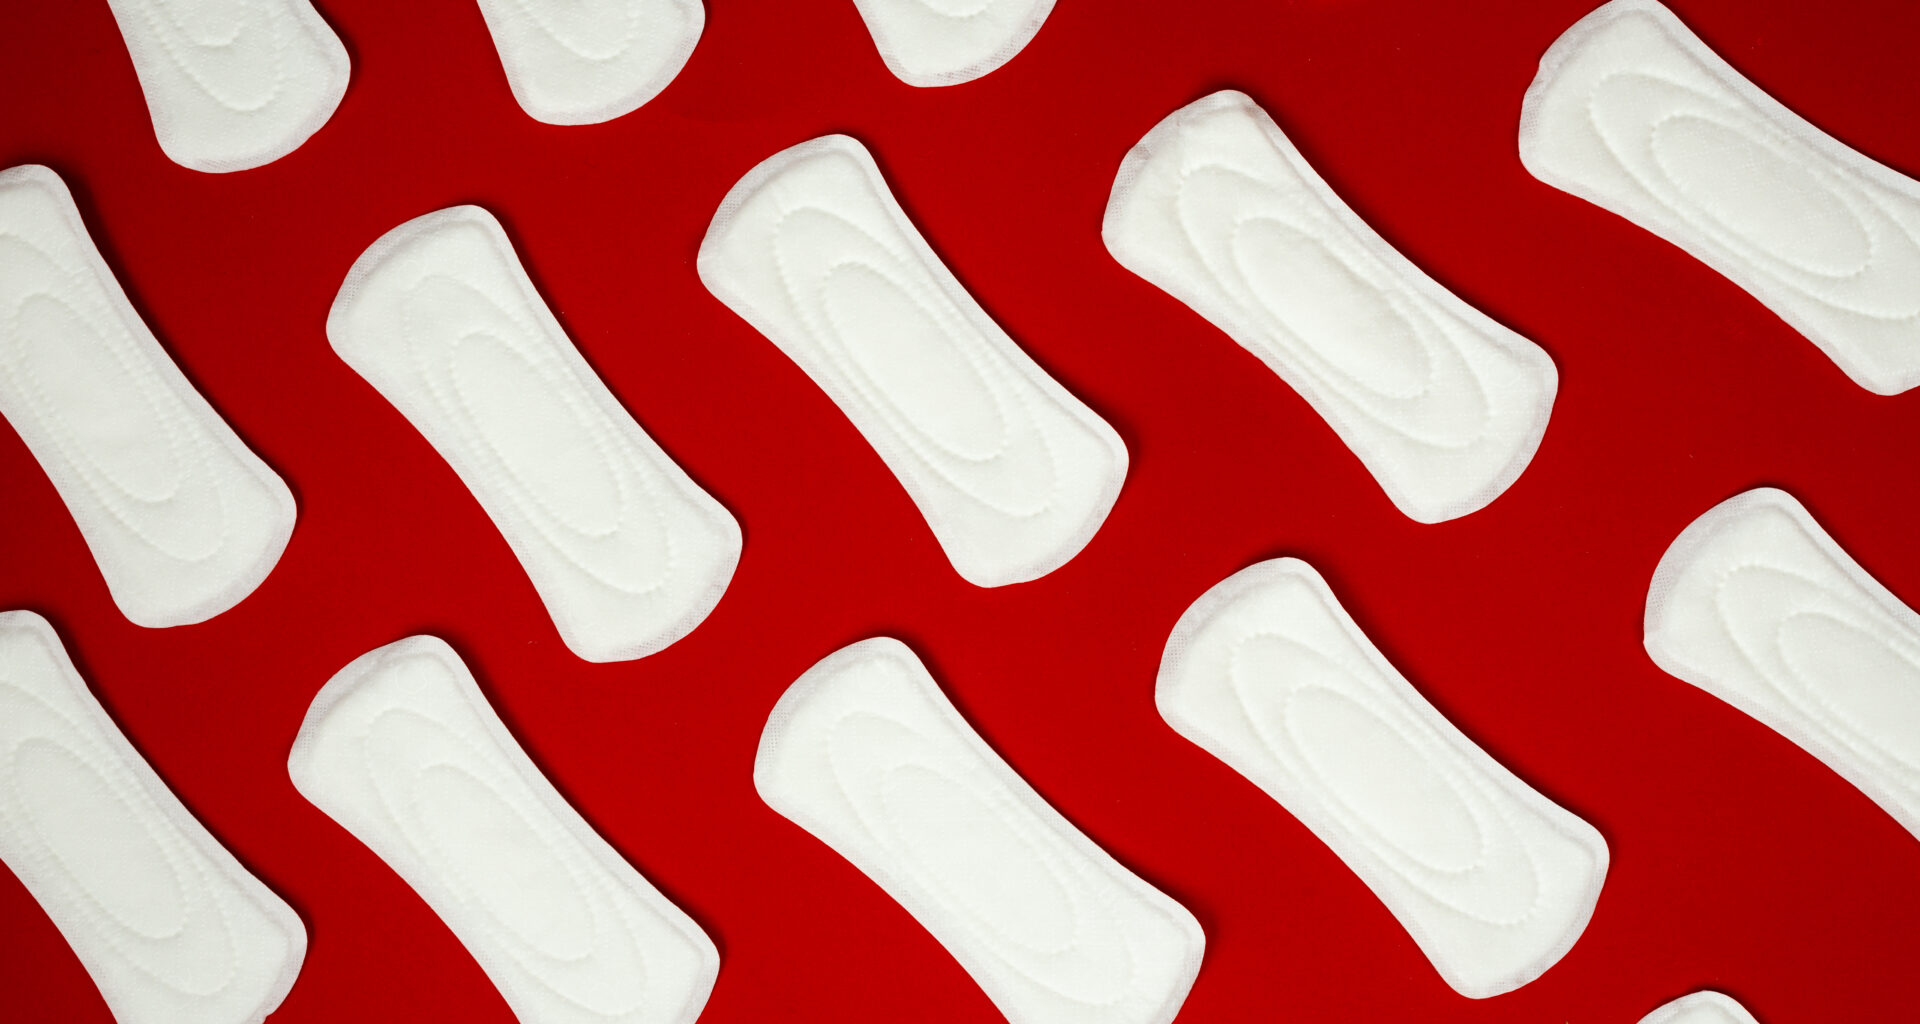 Menstruación digna ya es una realidad en Baja California